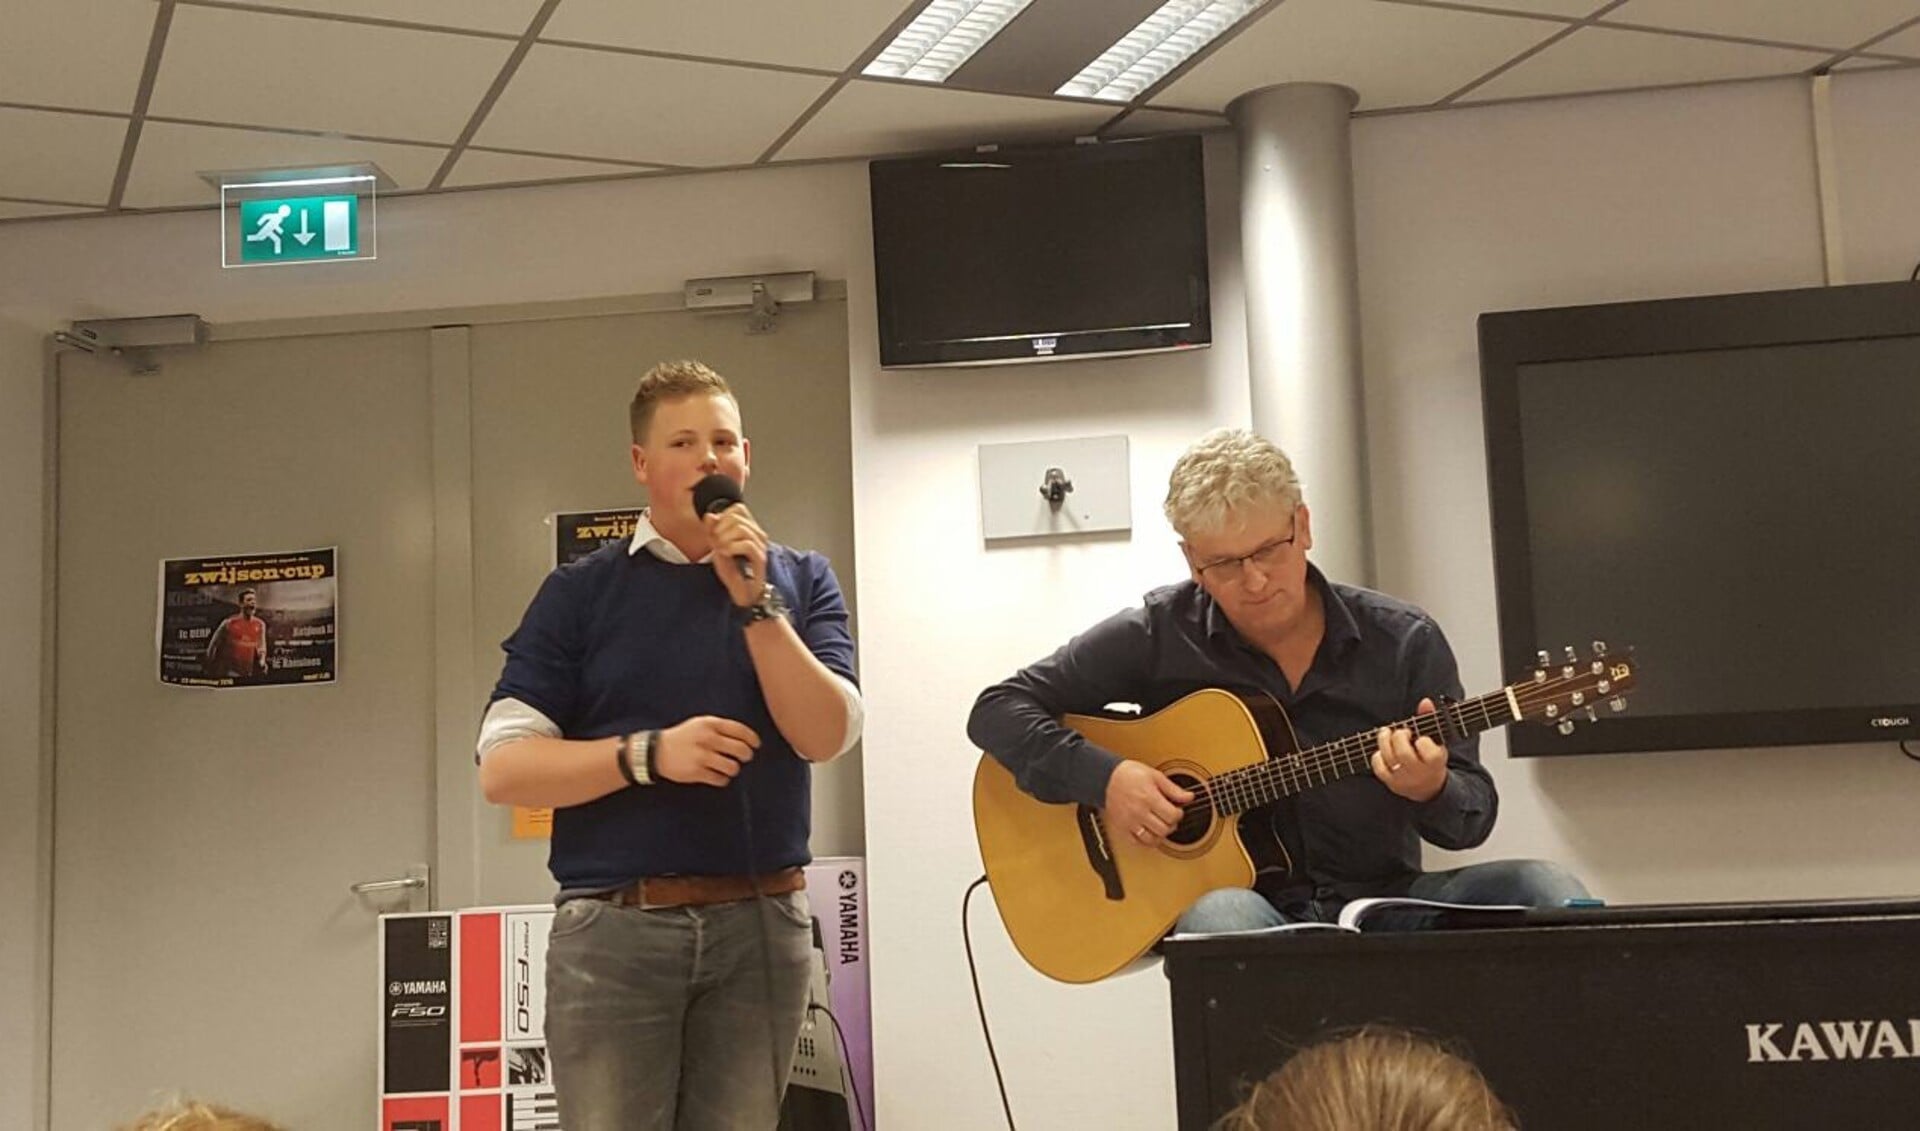 Stan van Hoof zingt tijdens zijn albumpresentatie op het Zwijsen afgelopen dinsdag. Muziekdocent meneer Van Hoof begeleidt hem op gitaar.